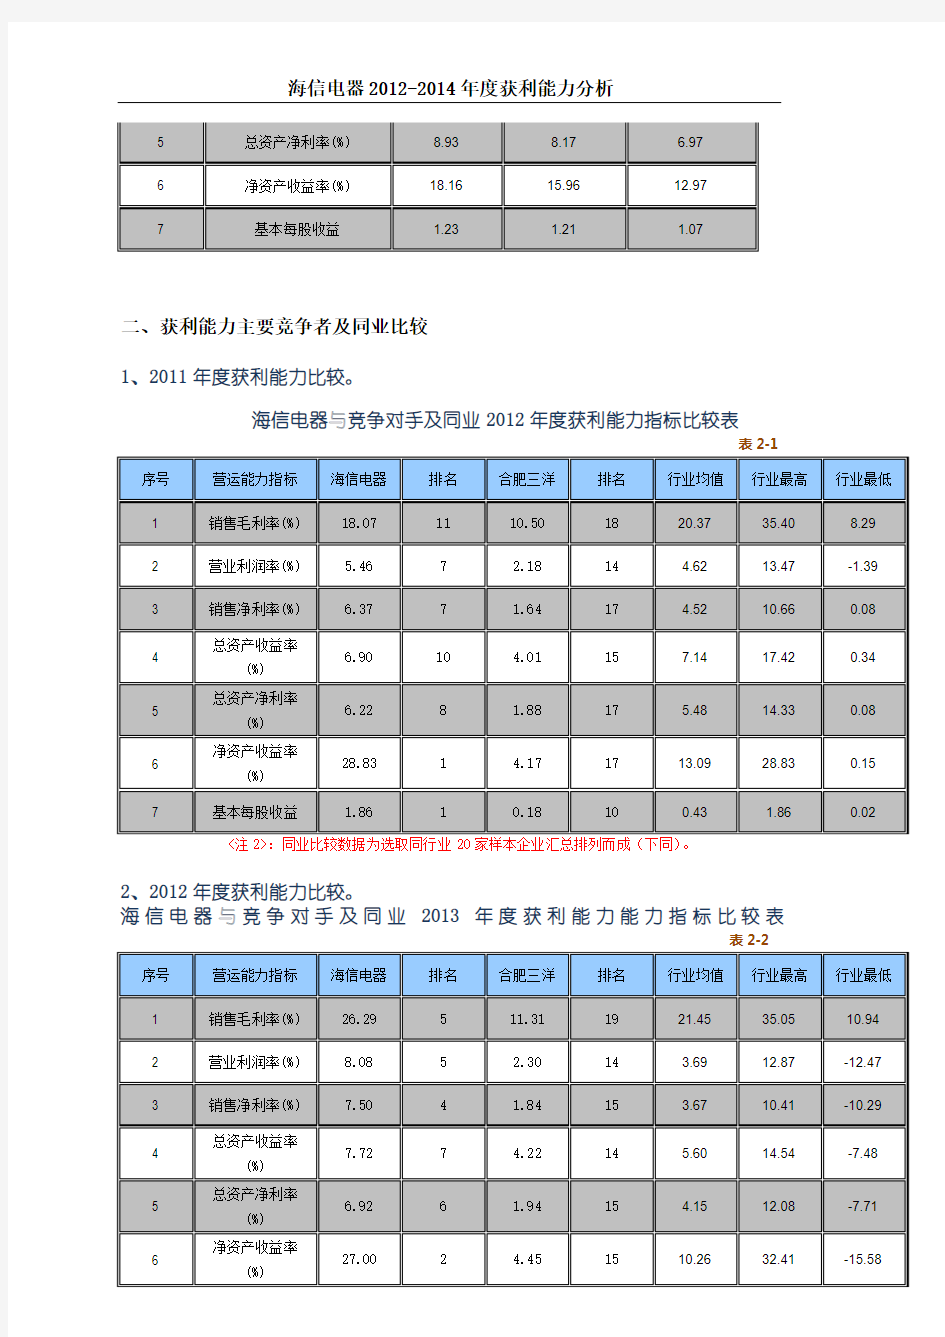 海信电器获利能力分析2012-2014年